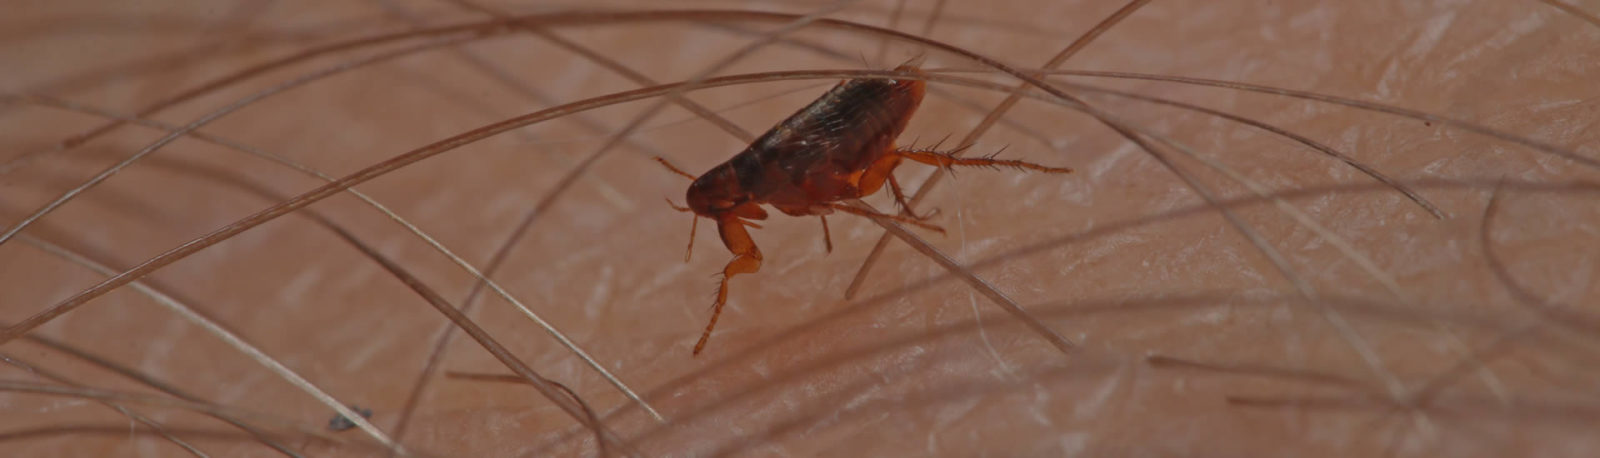 Flea Pest